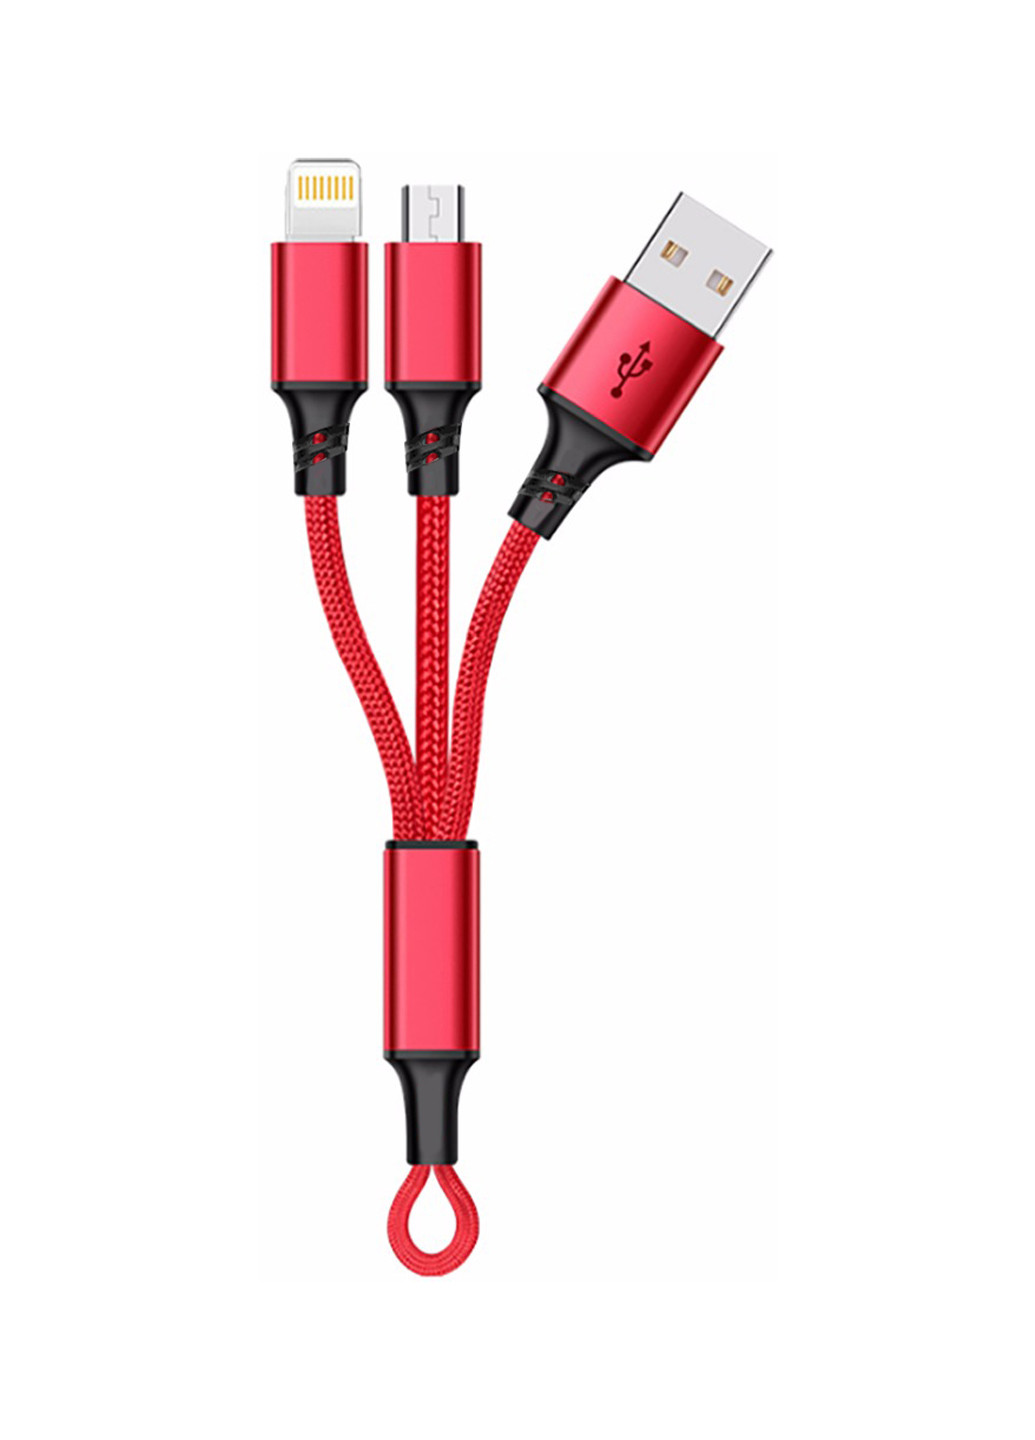 Кабель-брелок USB key Red, 2 в 1 - Lightning, Micro USB, 20 см XoKo sc-205 (132572871)